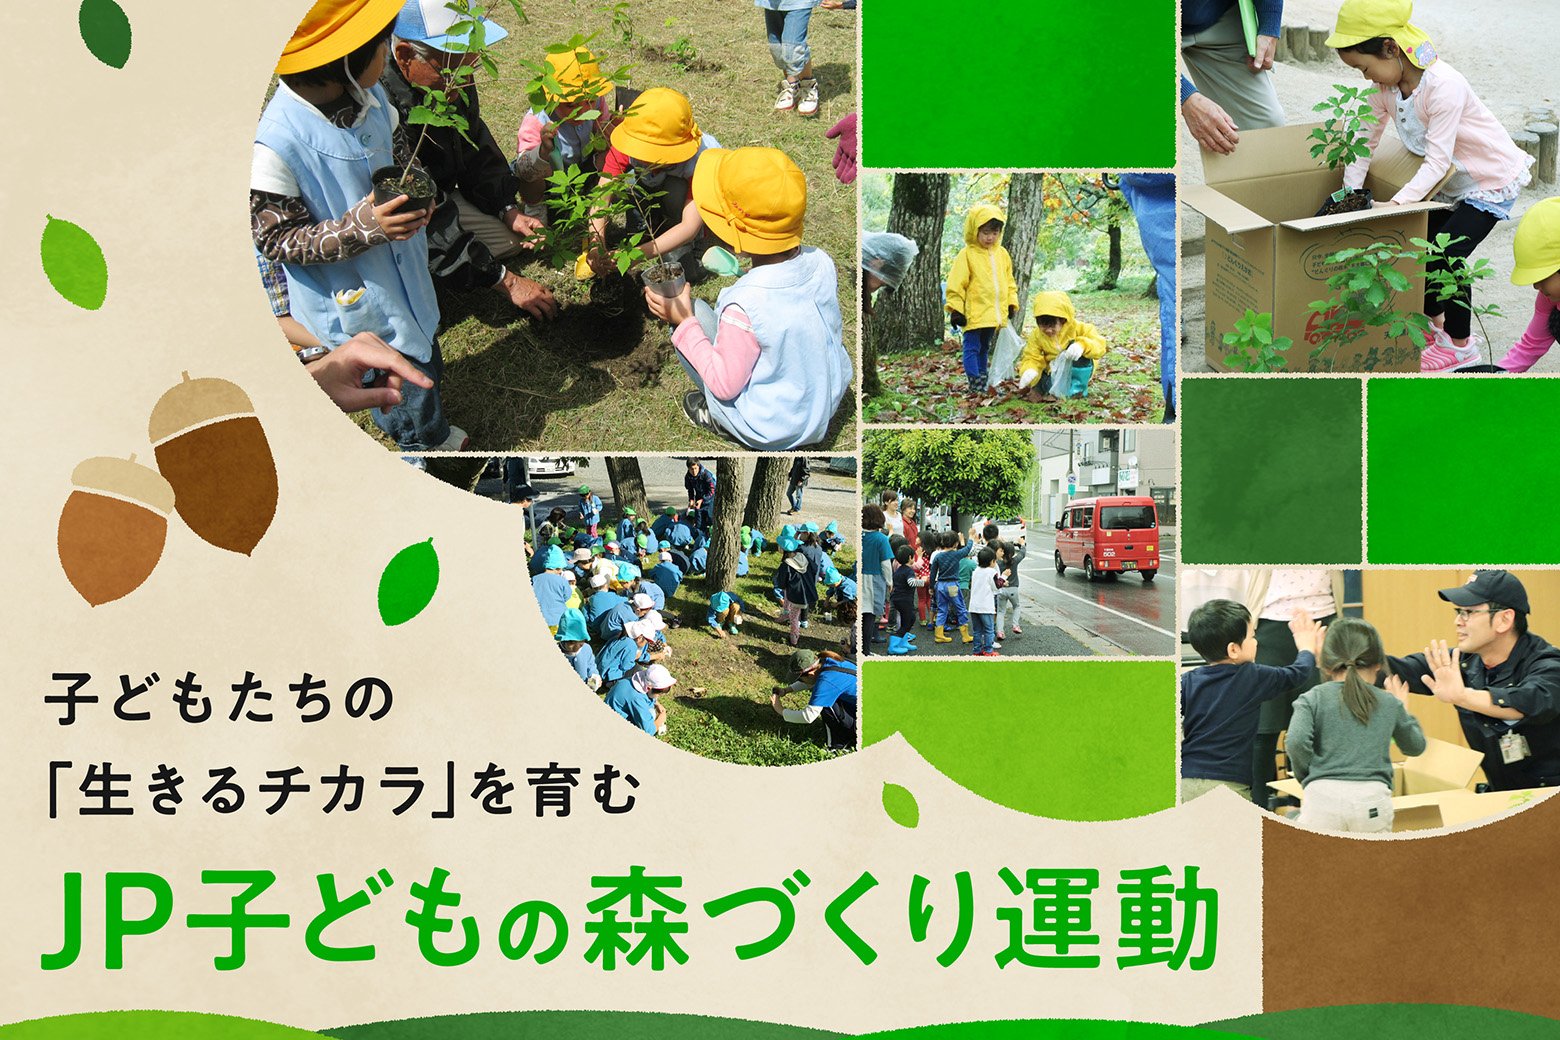 「生きるチカラ」を育む<br>子どもたちの未来のために日本郵政グループが森づくり体験活動を提供